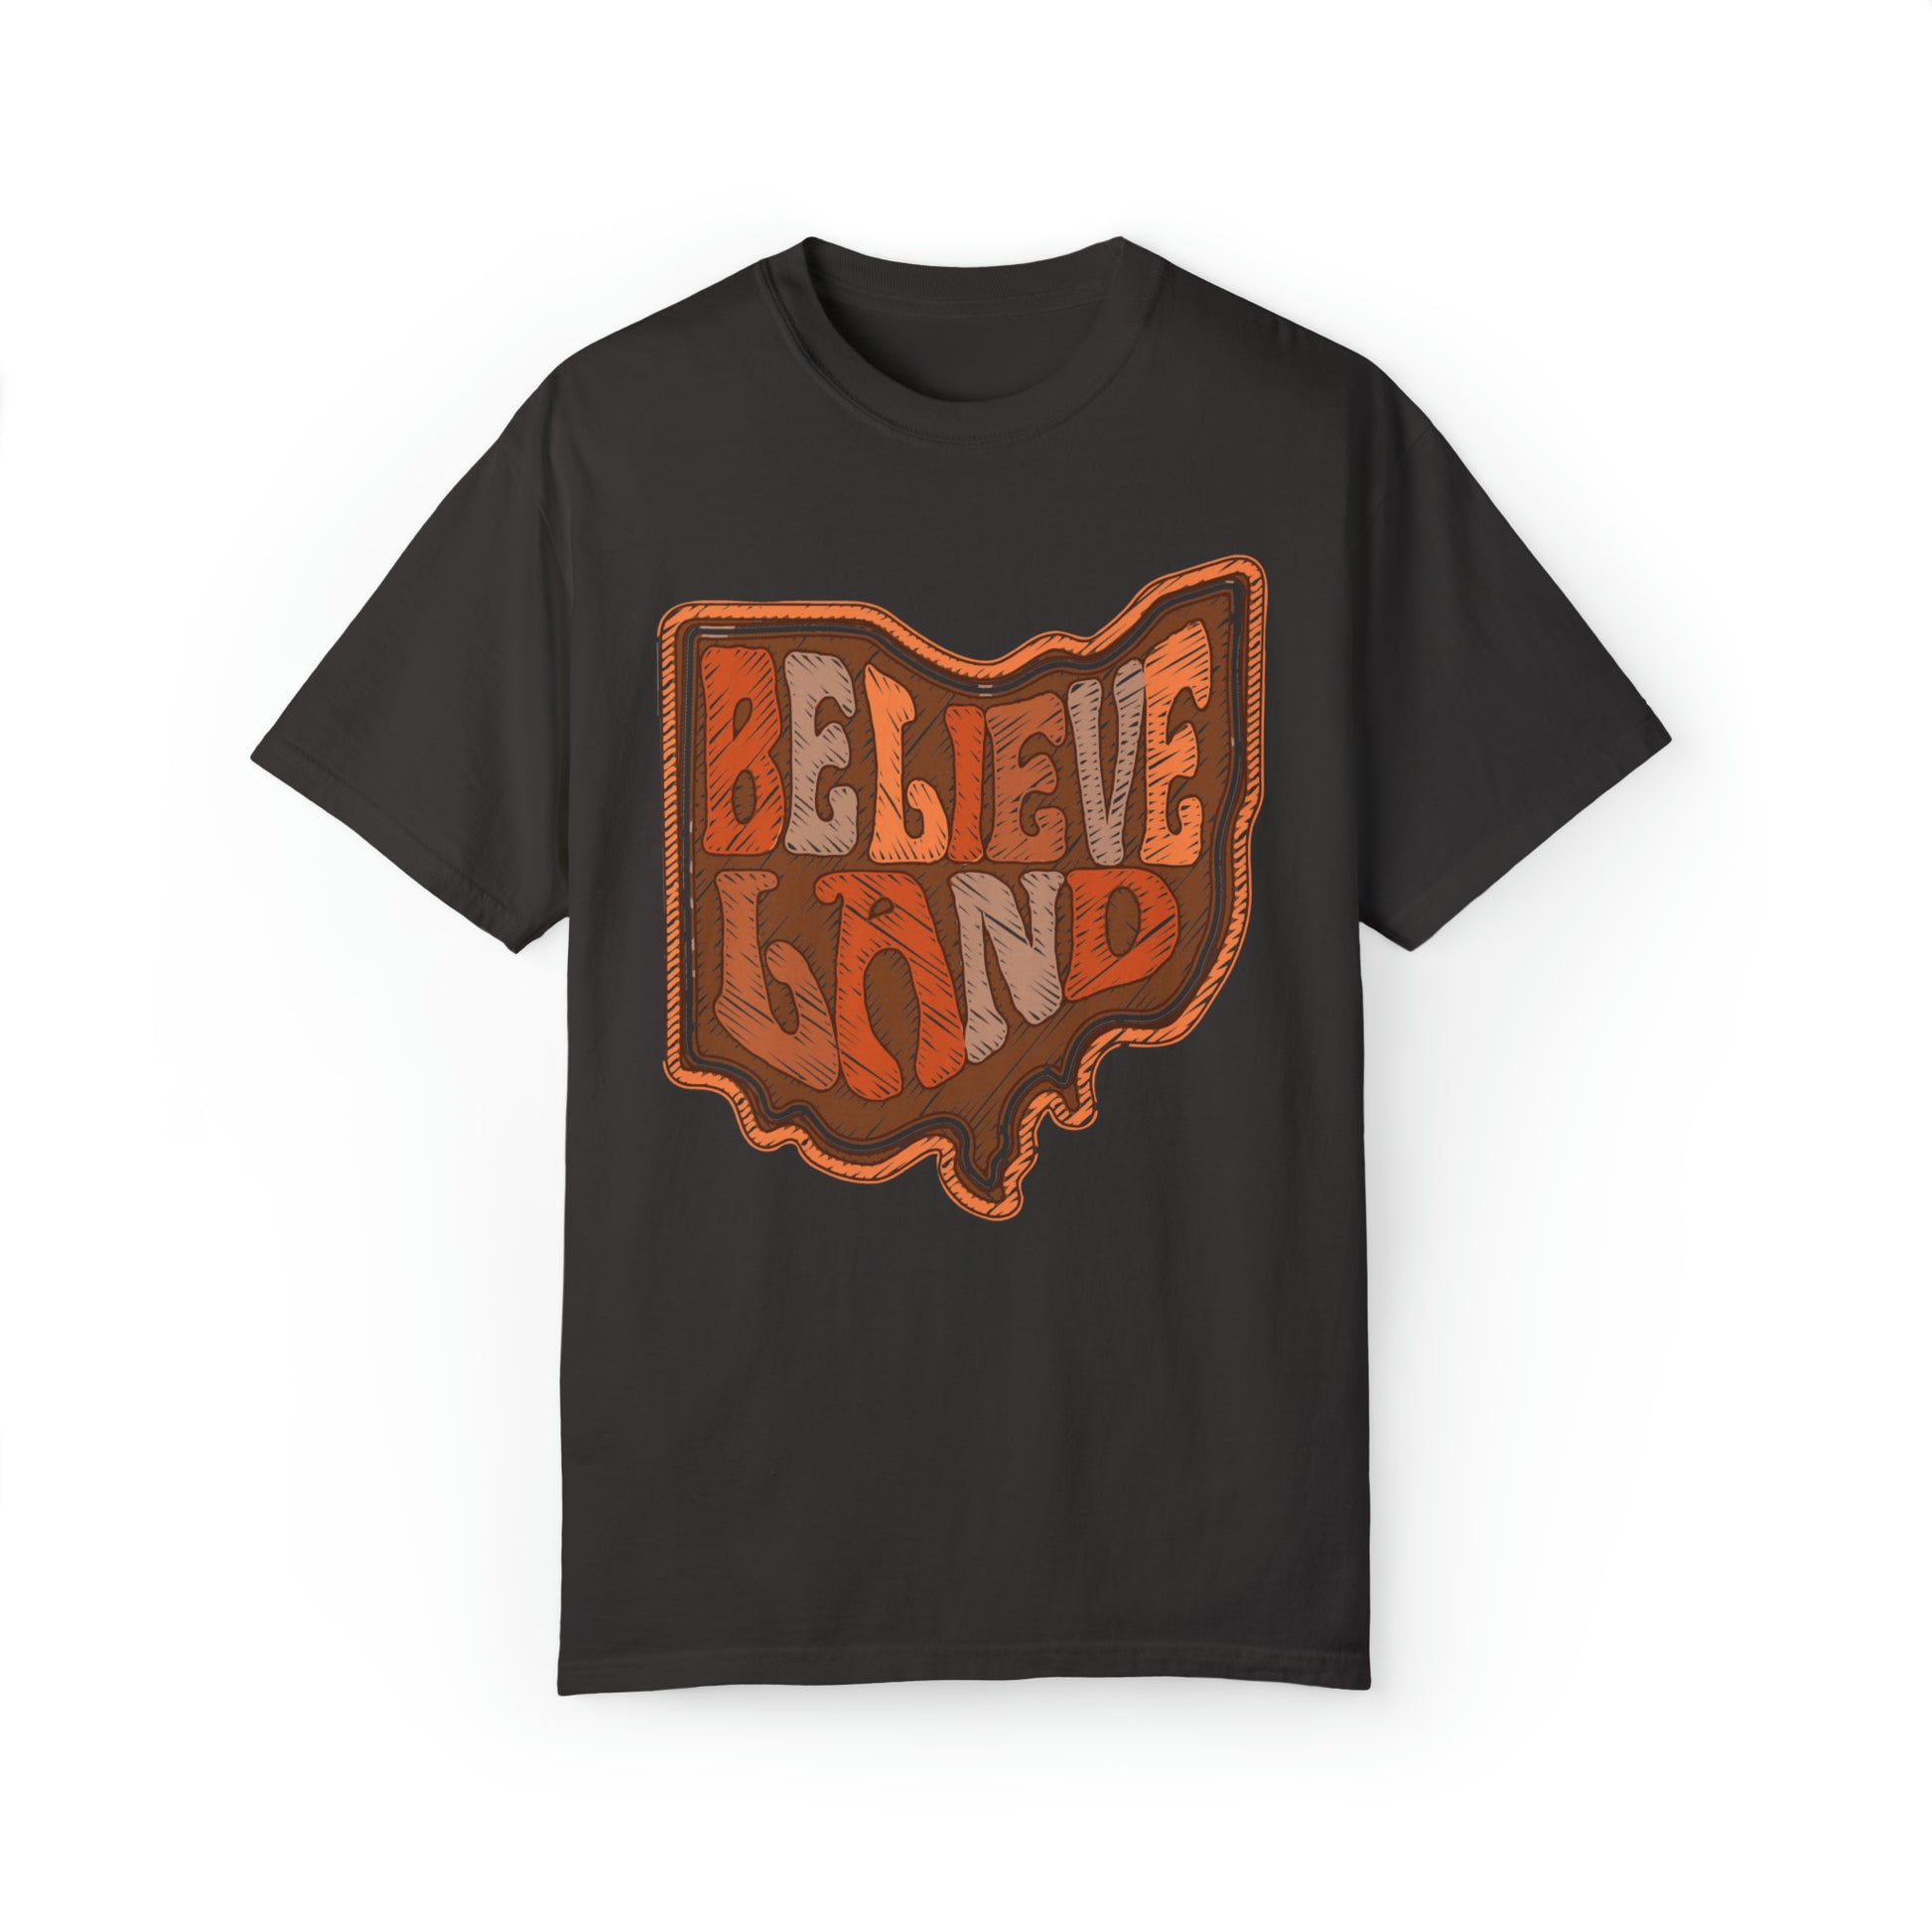 Cleveland Believeland T-Shirt - Short Sleeve Cleveland Browns Tee - Browns Football Gear, Apparel, Team Spirit, Tee - Design 6